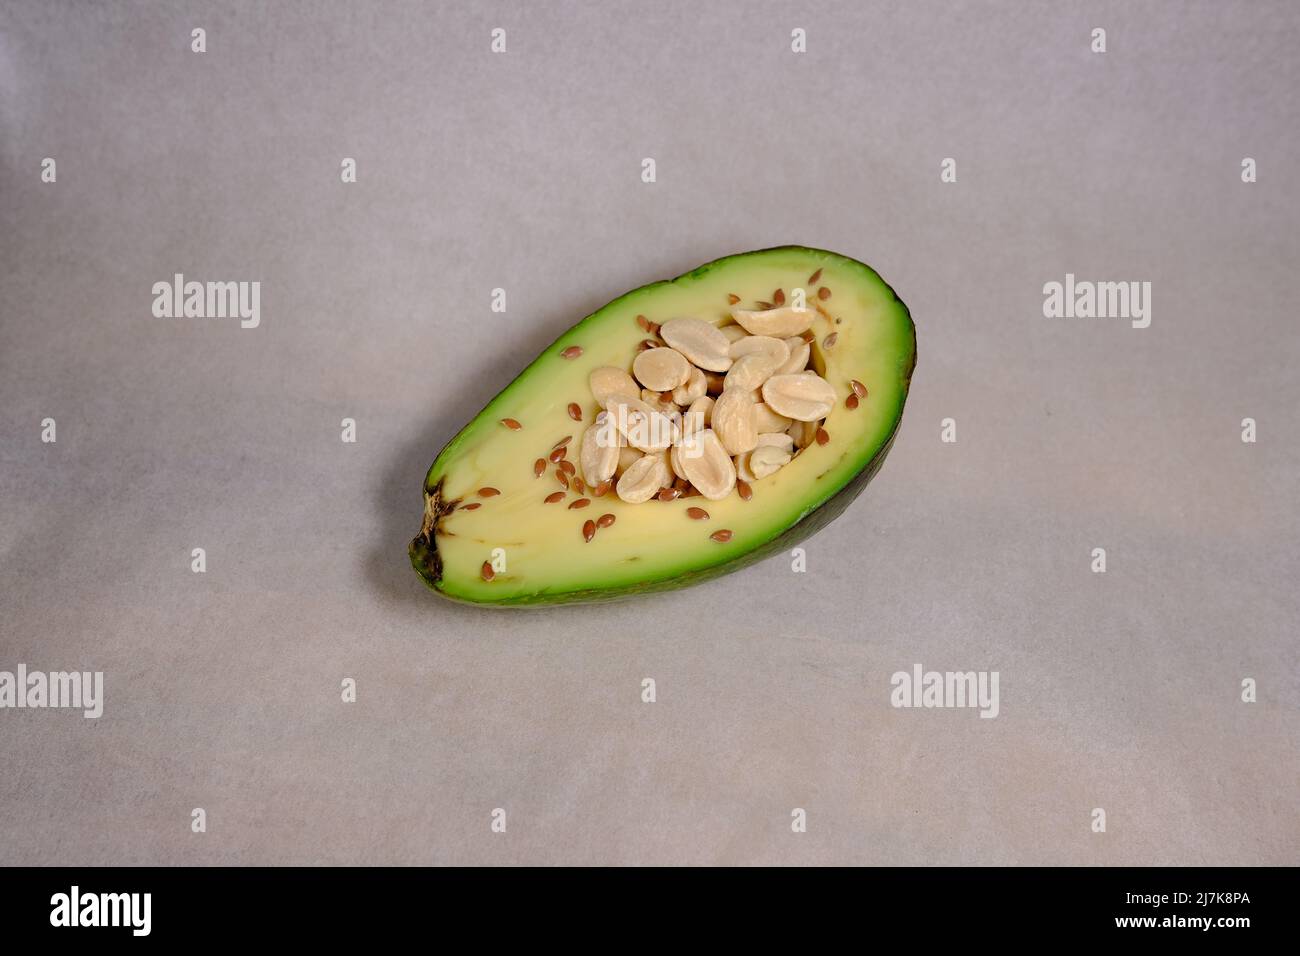 Frutti di avocado isolati su sfondo bianco con texture e arachidi all'interno e semi di colore marrone Foto Stock